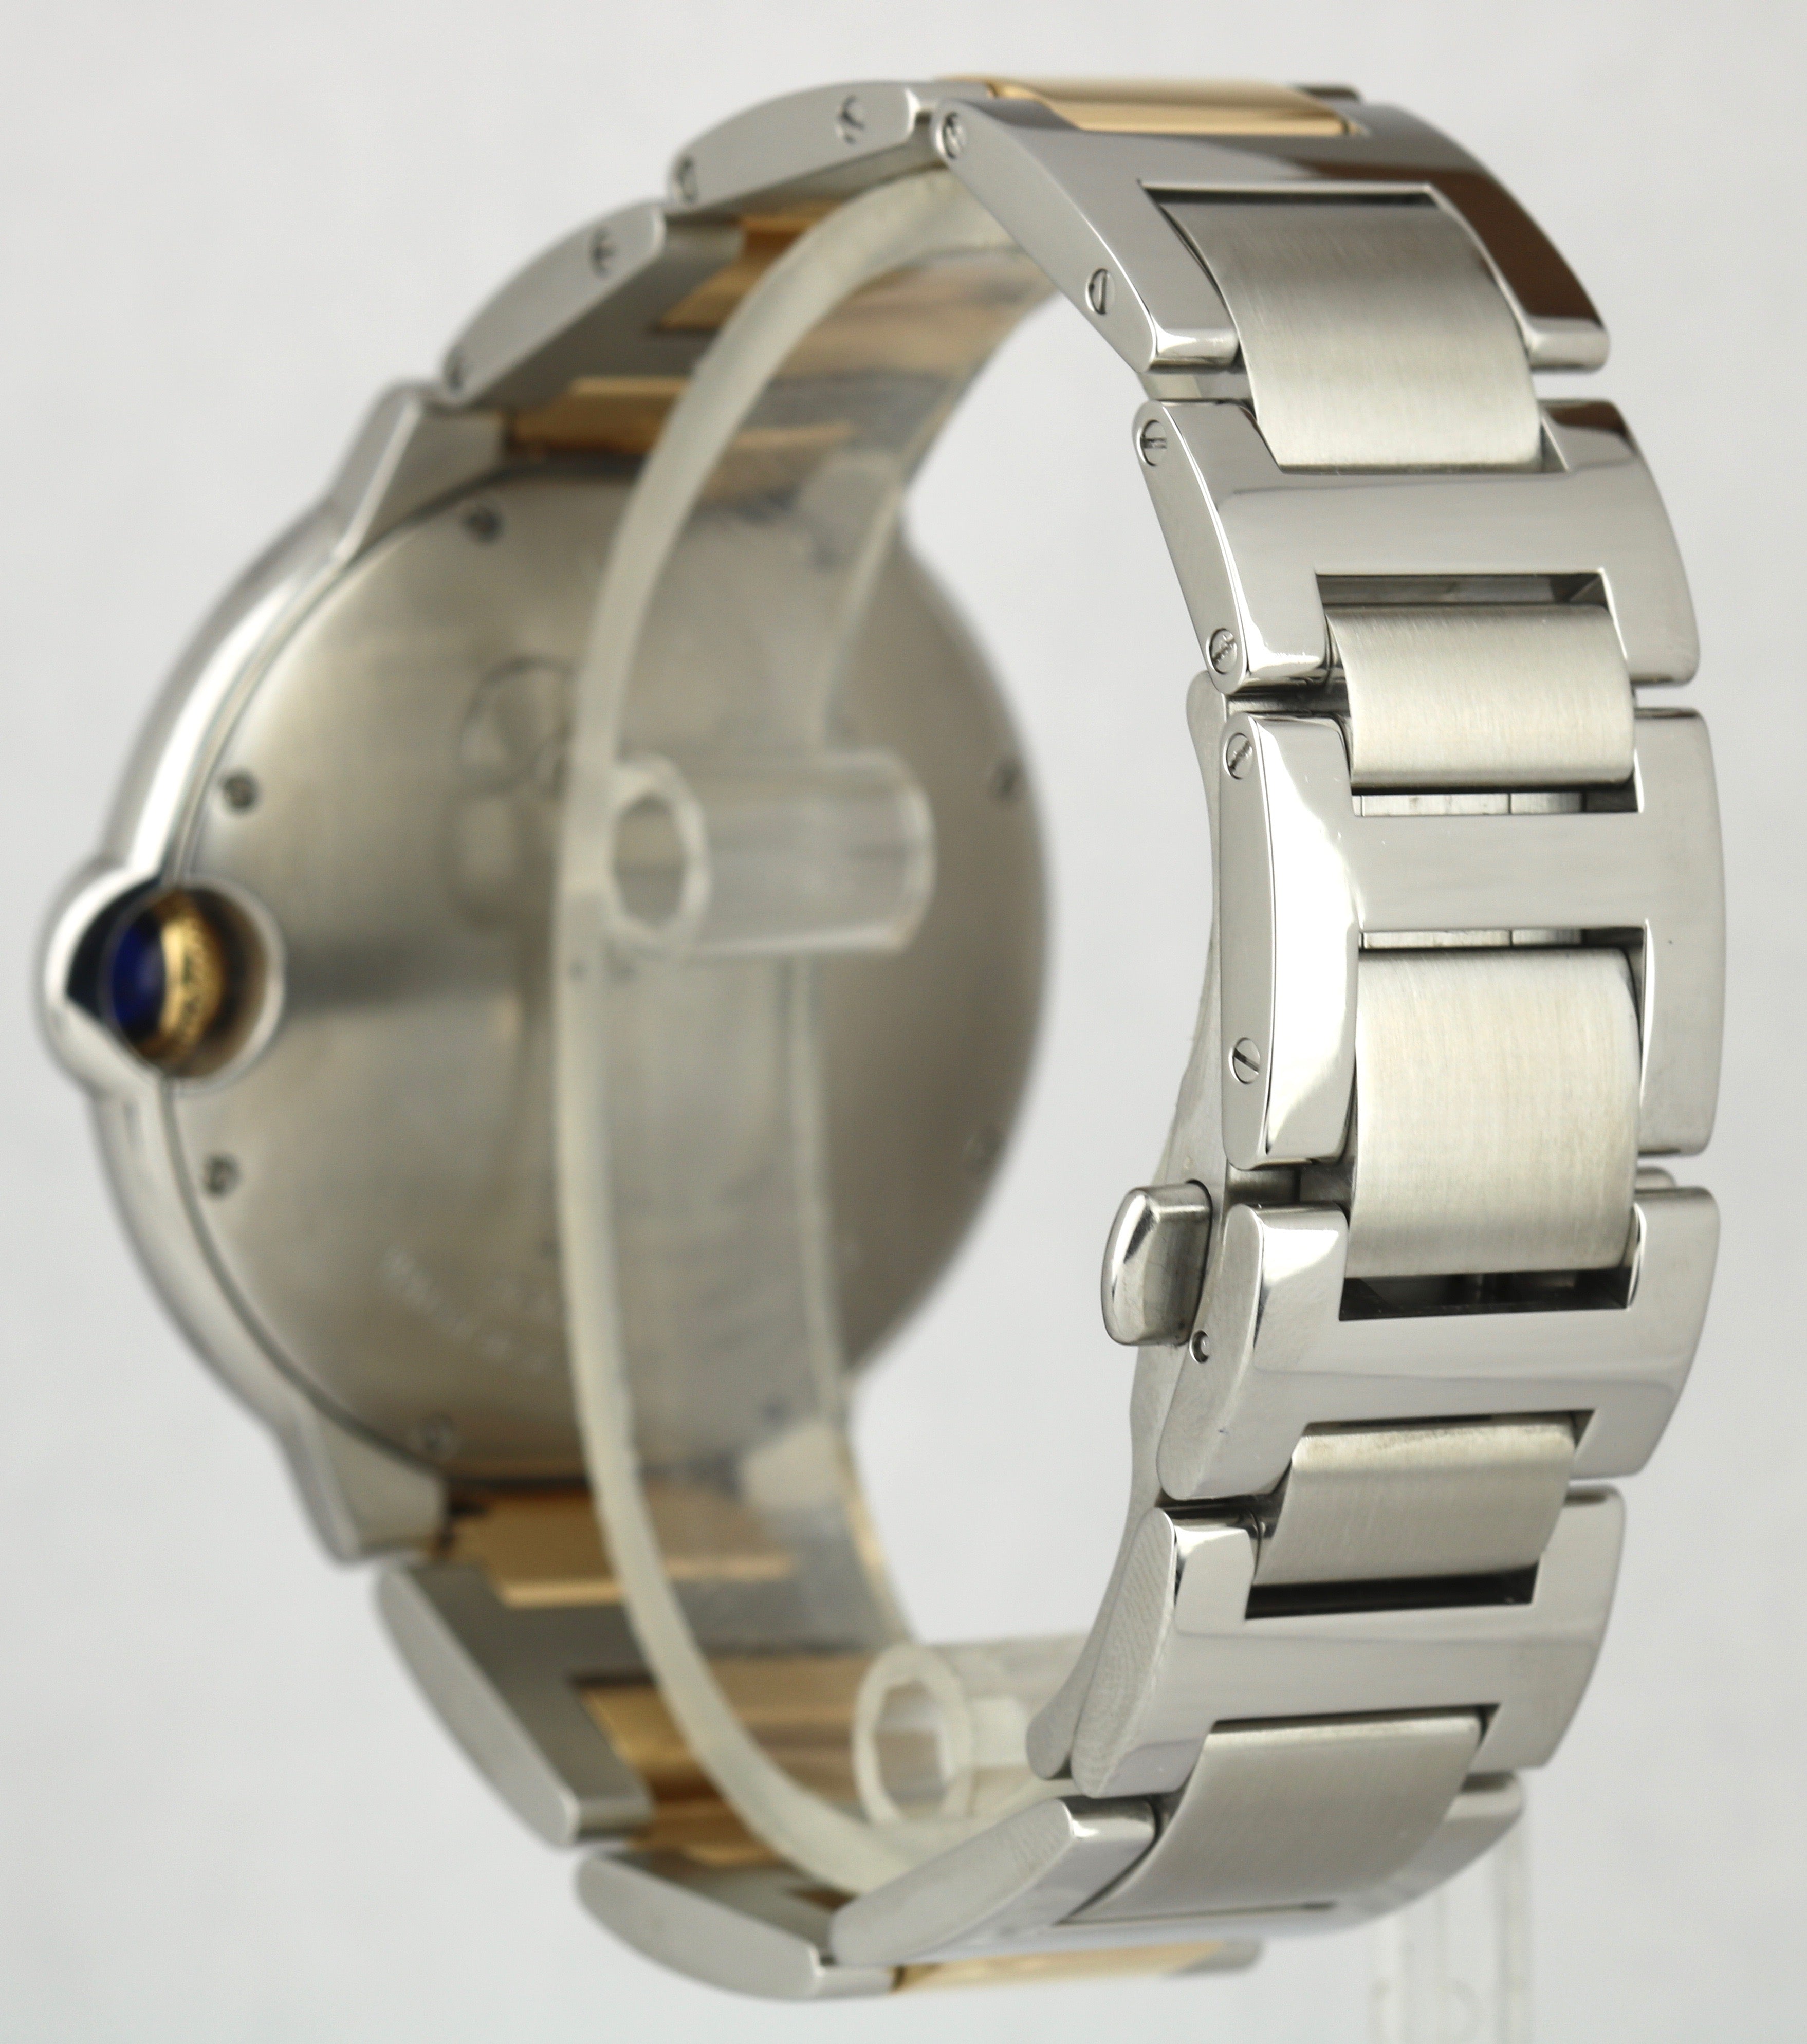 Cartier Ballon Bleu 42mm W69009Z3 3001 Two-Tone 18K Gold Silver Automatic Watch